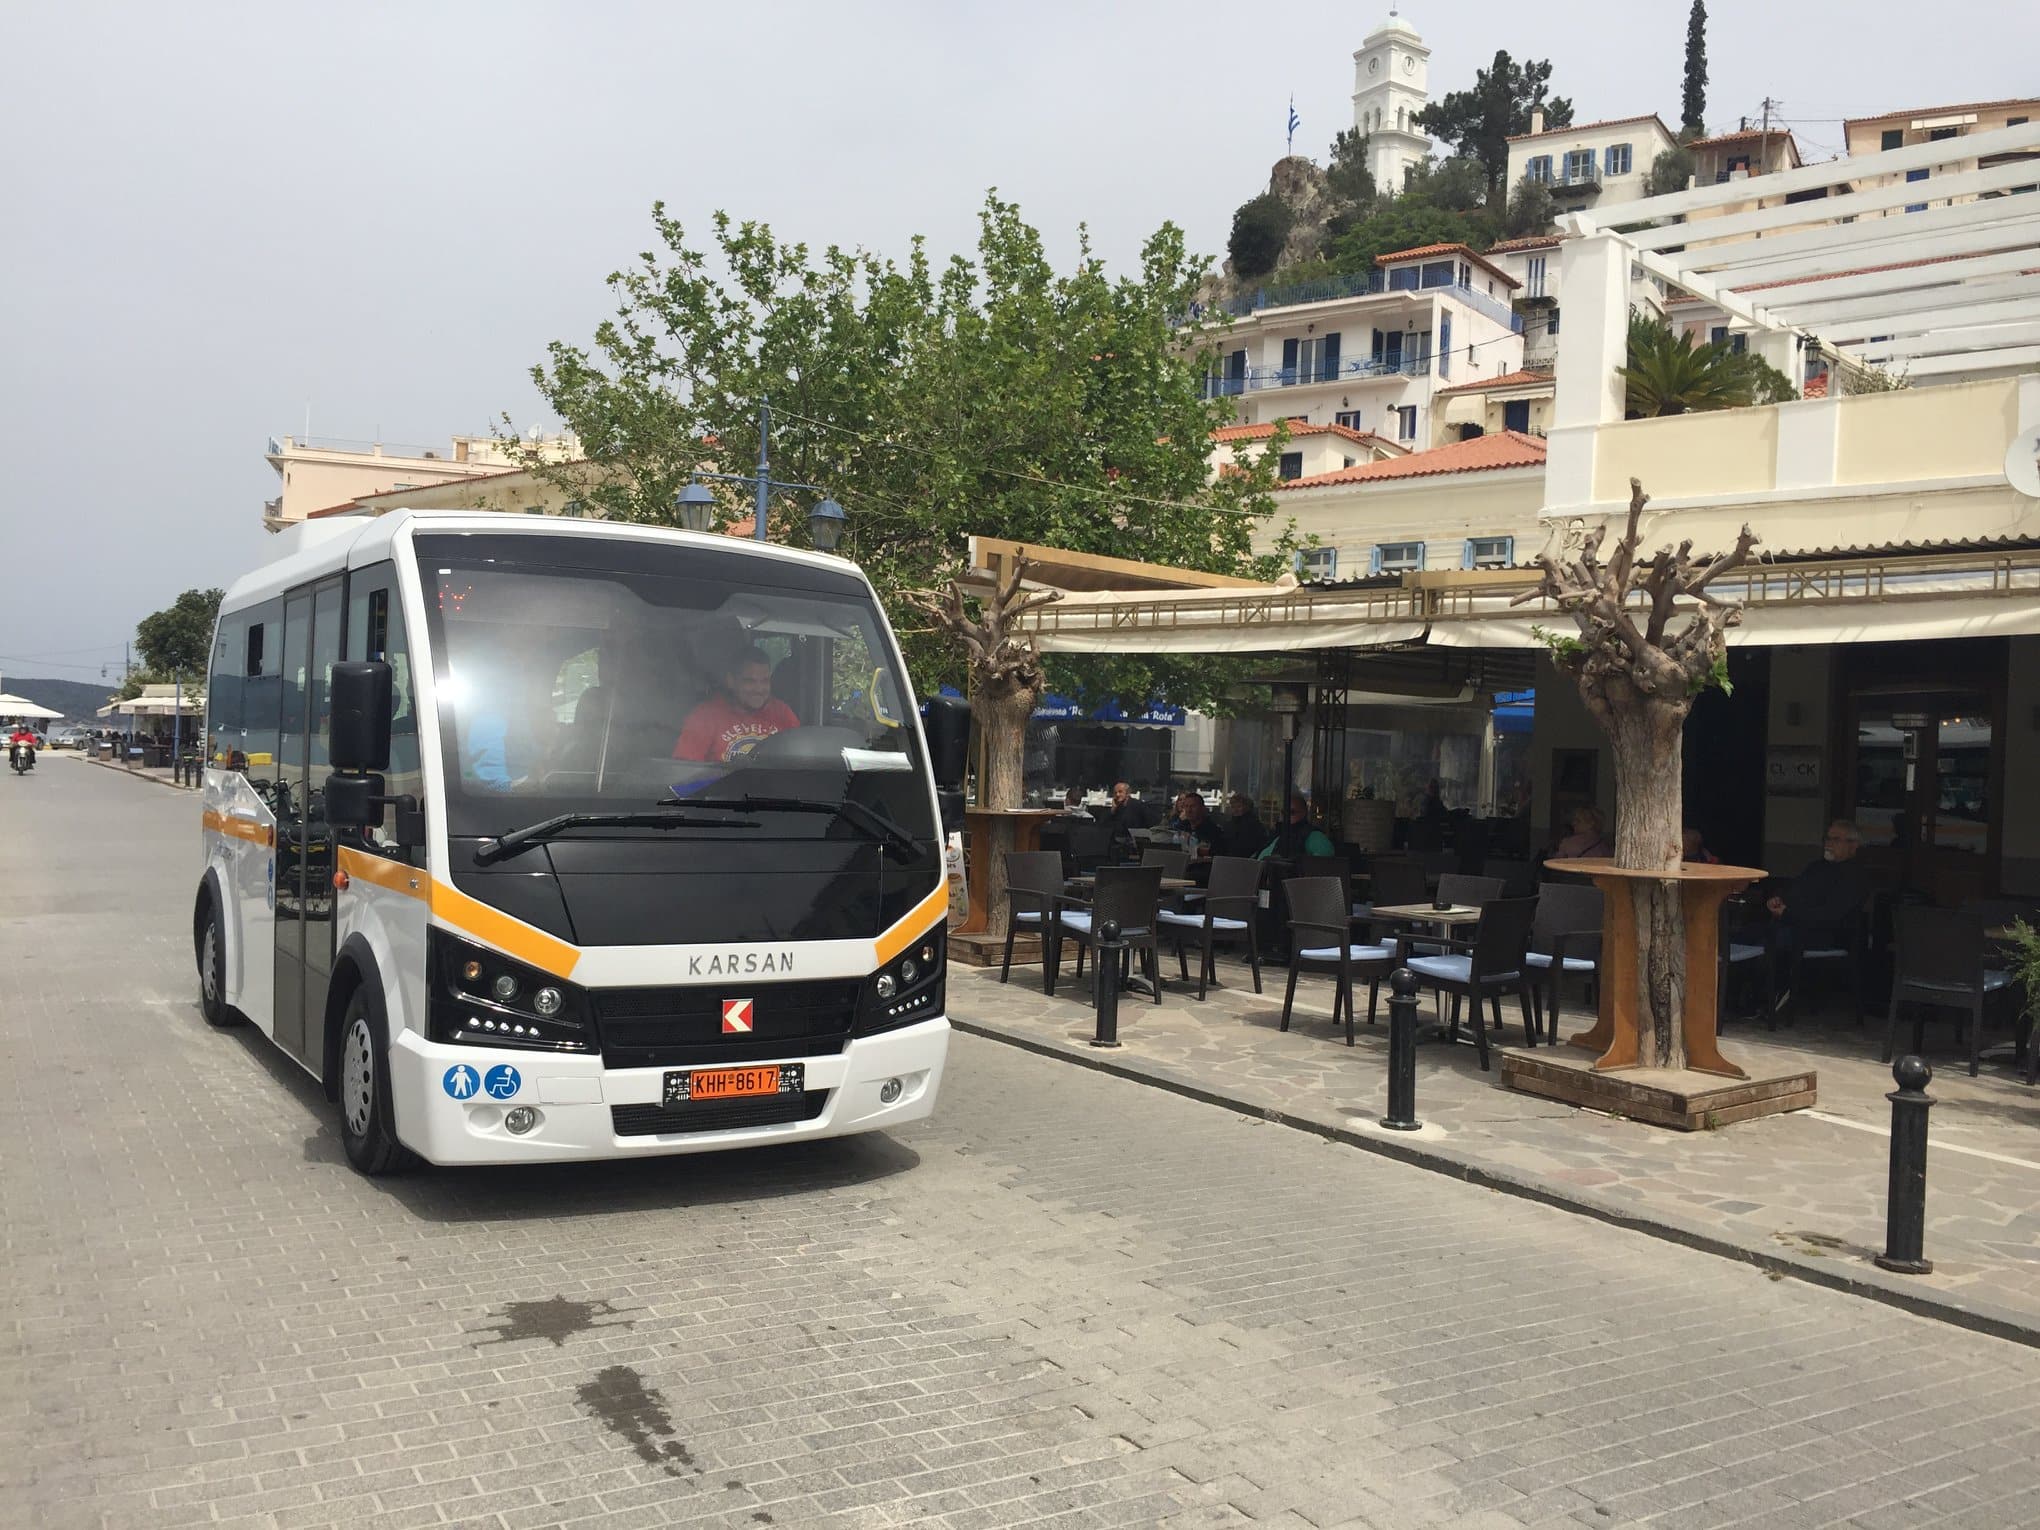 λεωφορεία Δήμου Πόρου